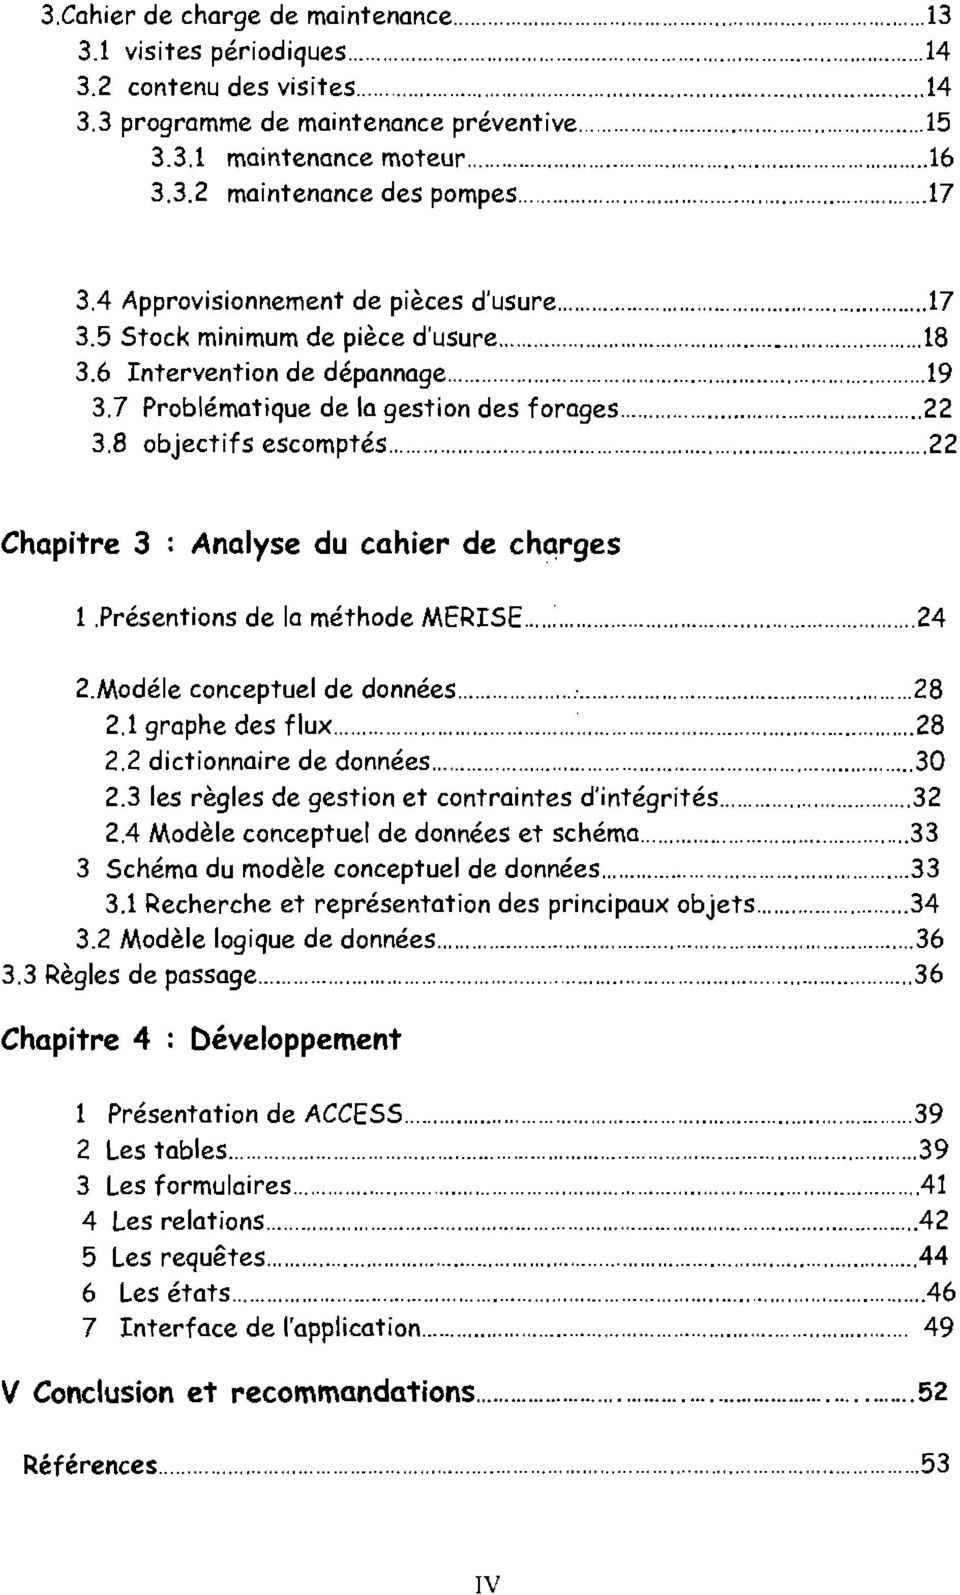 . 22 Chapitre 3 : Analyse du cahier de charges 1.Présentions de la méthade MERISE... 24 2.Modéle conceptuel de données..... 28 2.1 graphe des flux..... 28 2.2 dictionnaire de données... 30 2.